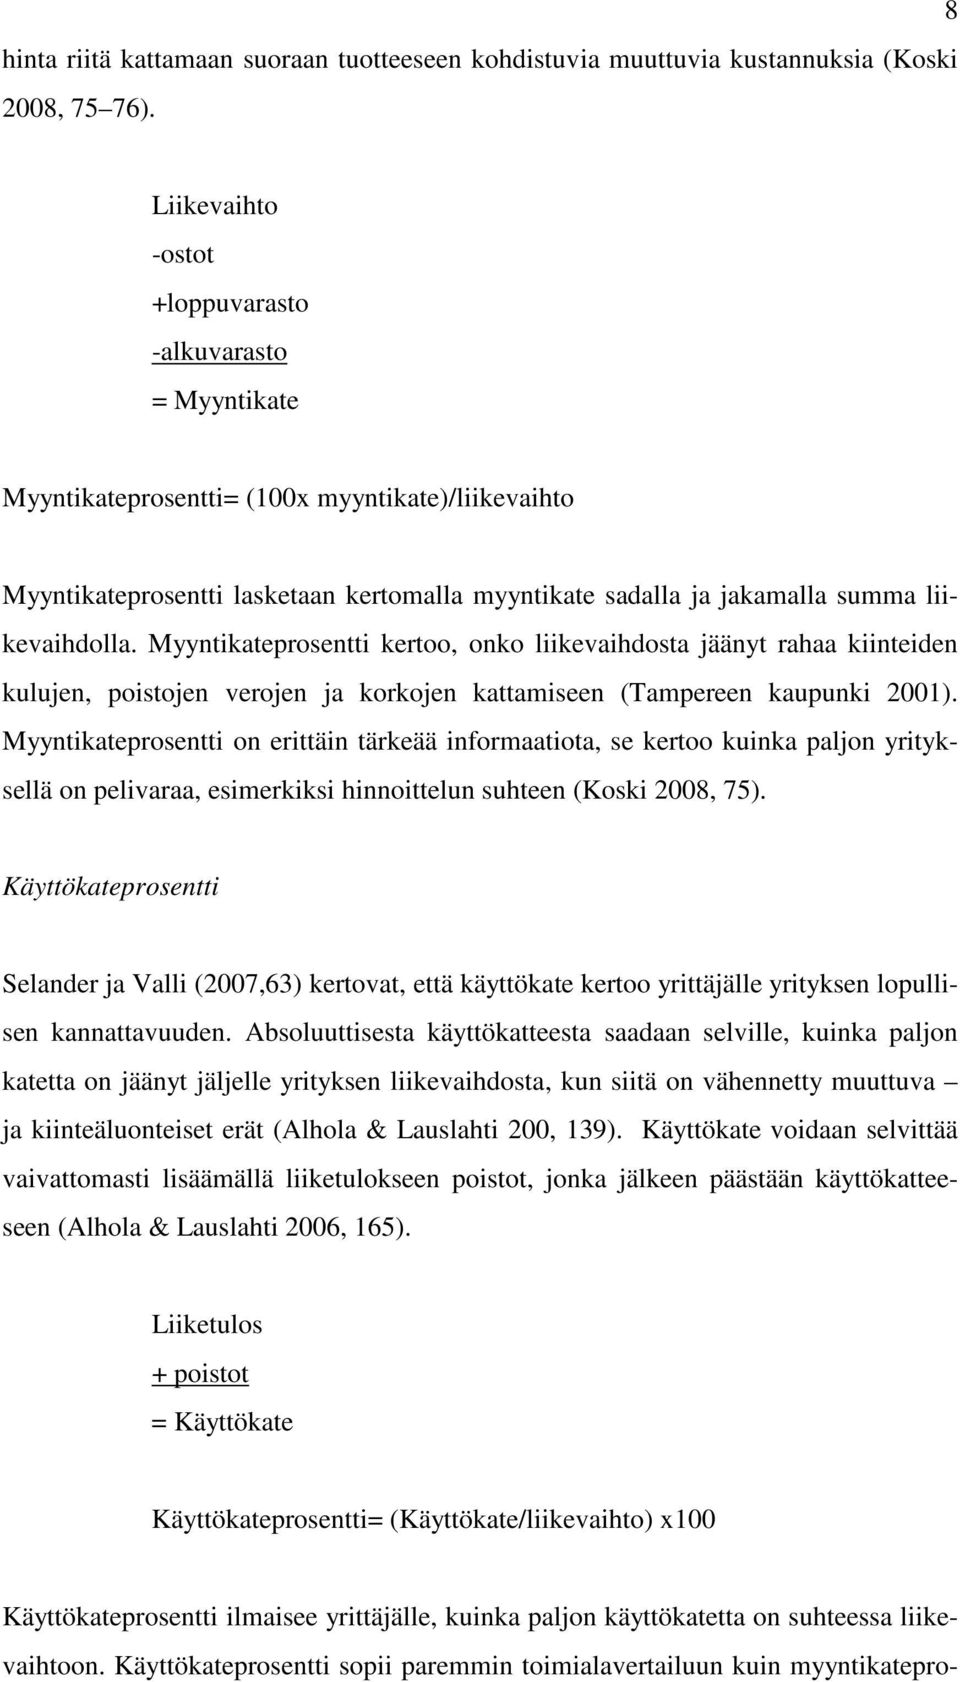 liikevaihdolla. Myyntikateprosentti kertoo, onko liikevaihdosta jäänyt rahaa kiinteiden kulujen, poistojen verojen ja korkojen kattamiseen (Tampereen kaupunki 2001).